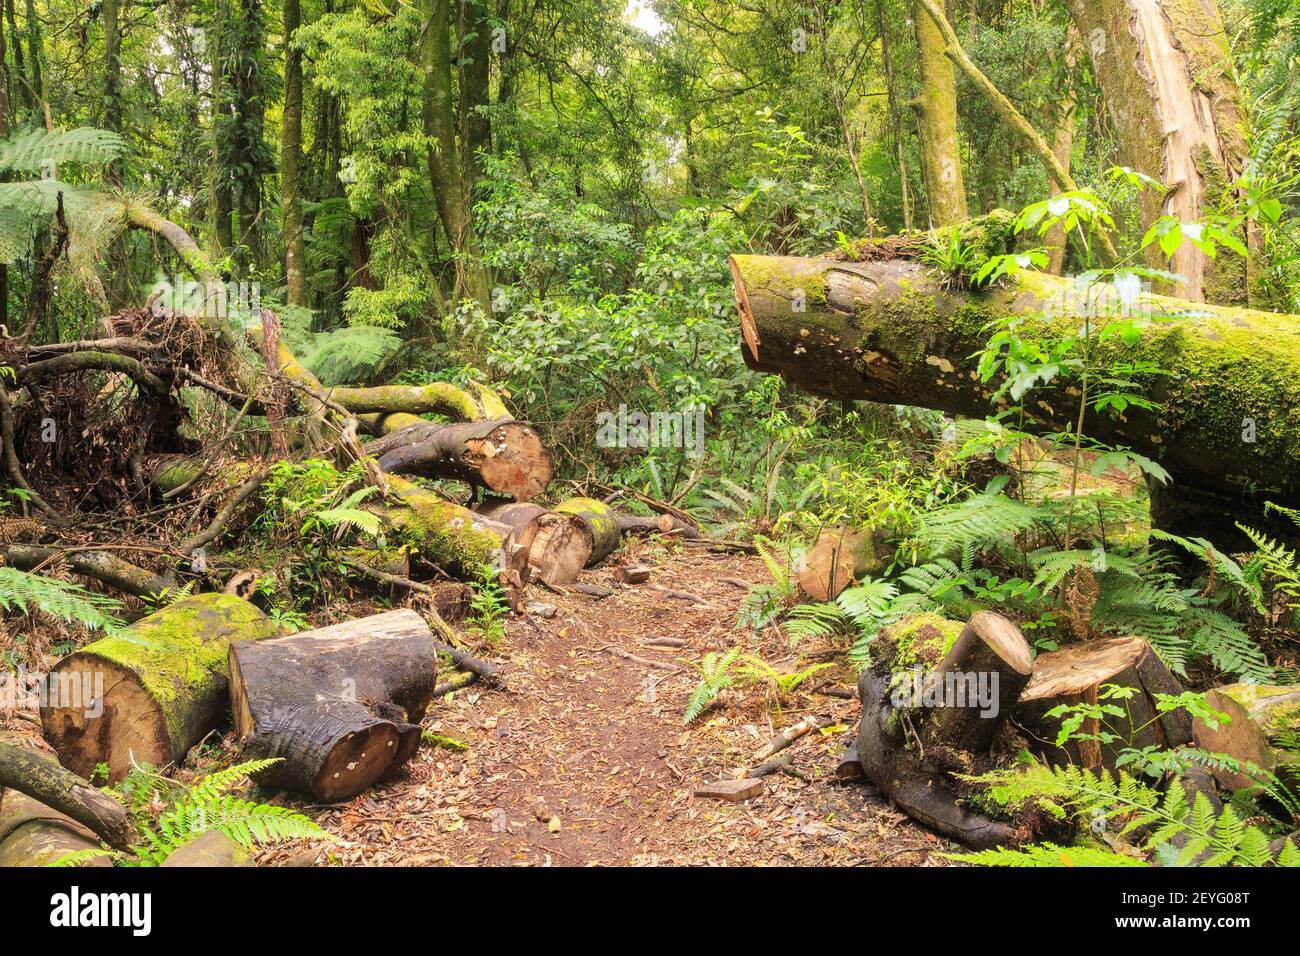 Ein Wanderweg im neuseeländischen Urwald. Ein Wartungsteam hat einen umgestürzten Baum durchgeschnitten, um den Weg frei zu machen Stockfoto